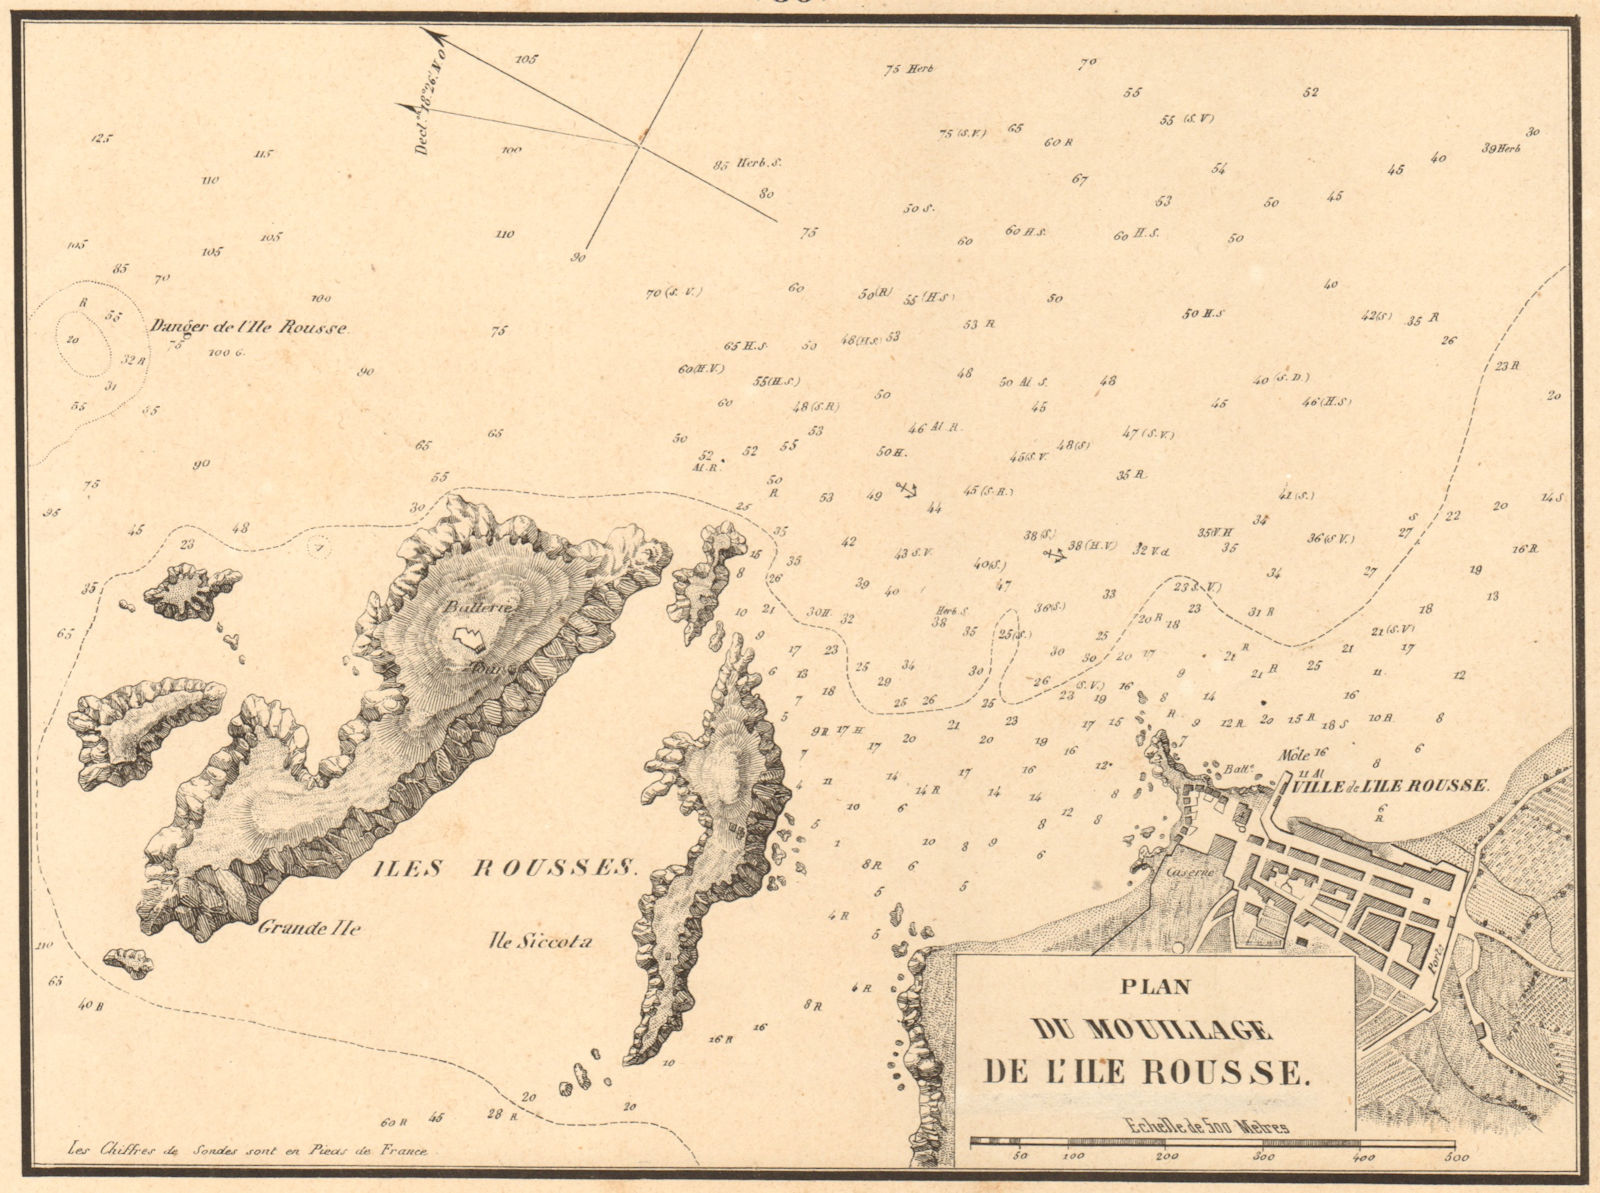 Plan du Mouillage de l'Ile Rousse. Corse Corsica. GAUTTIER 1851 old map